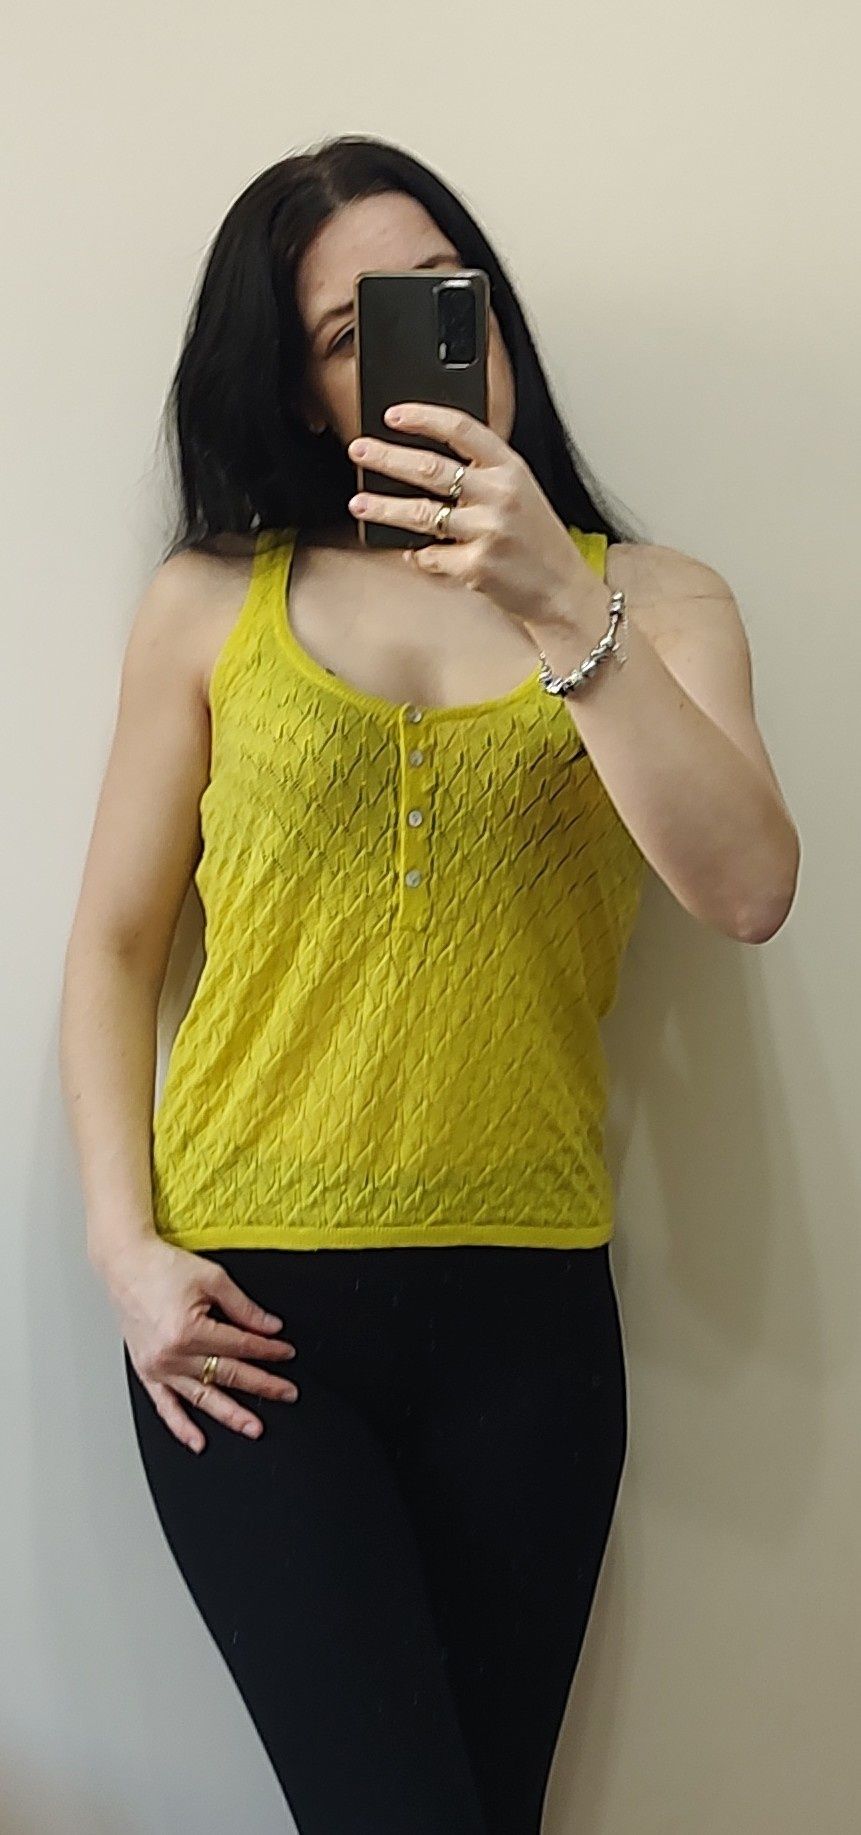 Bluzka na ramiączkach Zara S / 36 / 8 żółto zielony kolor. Bawełna